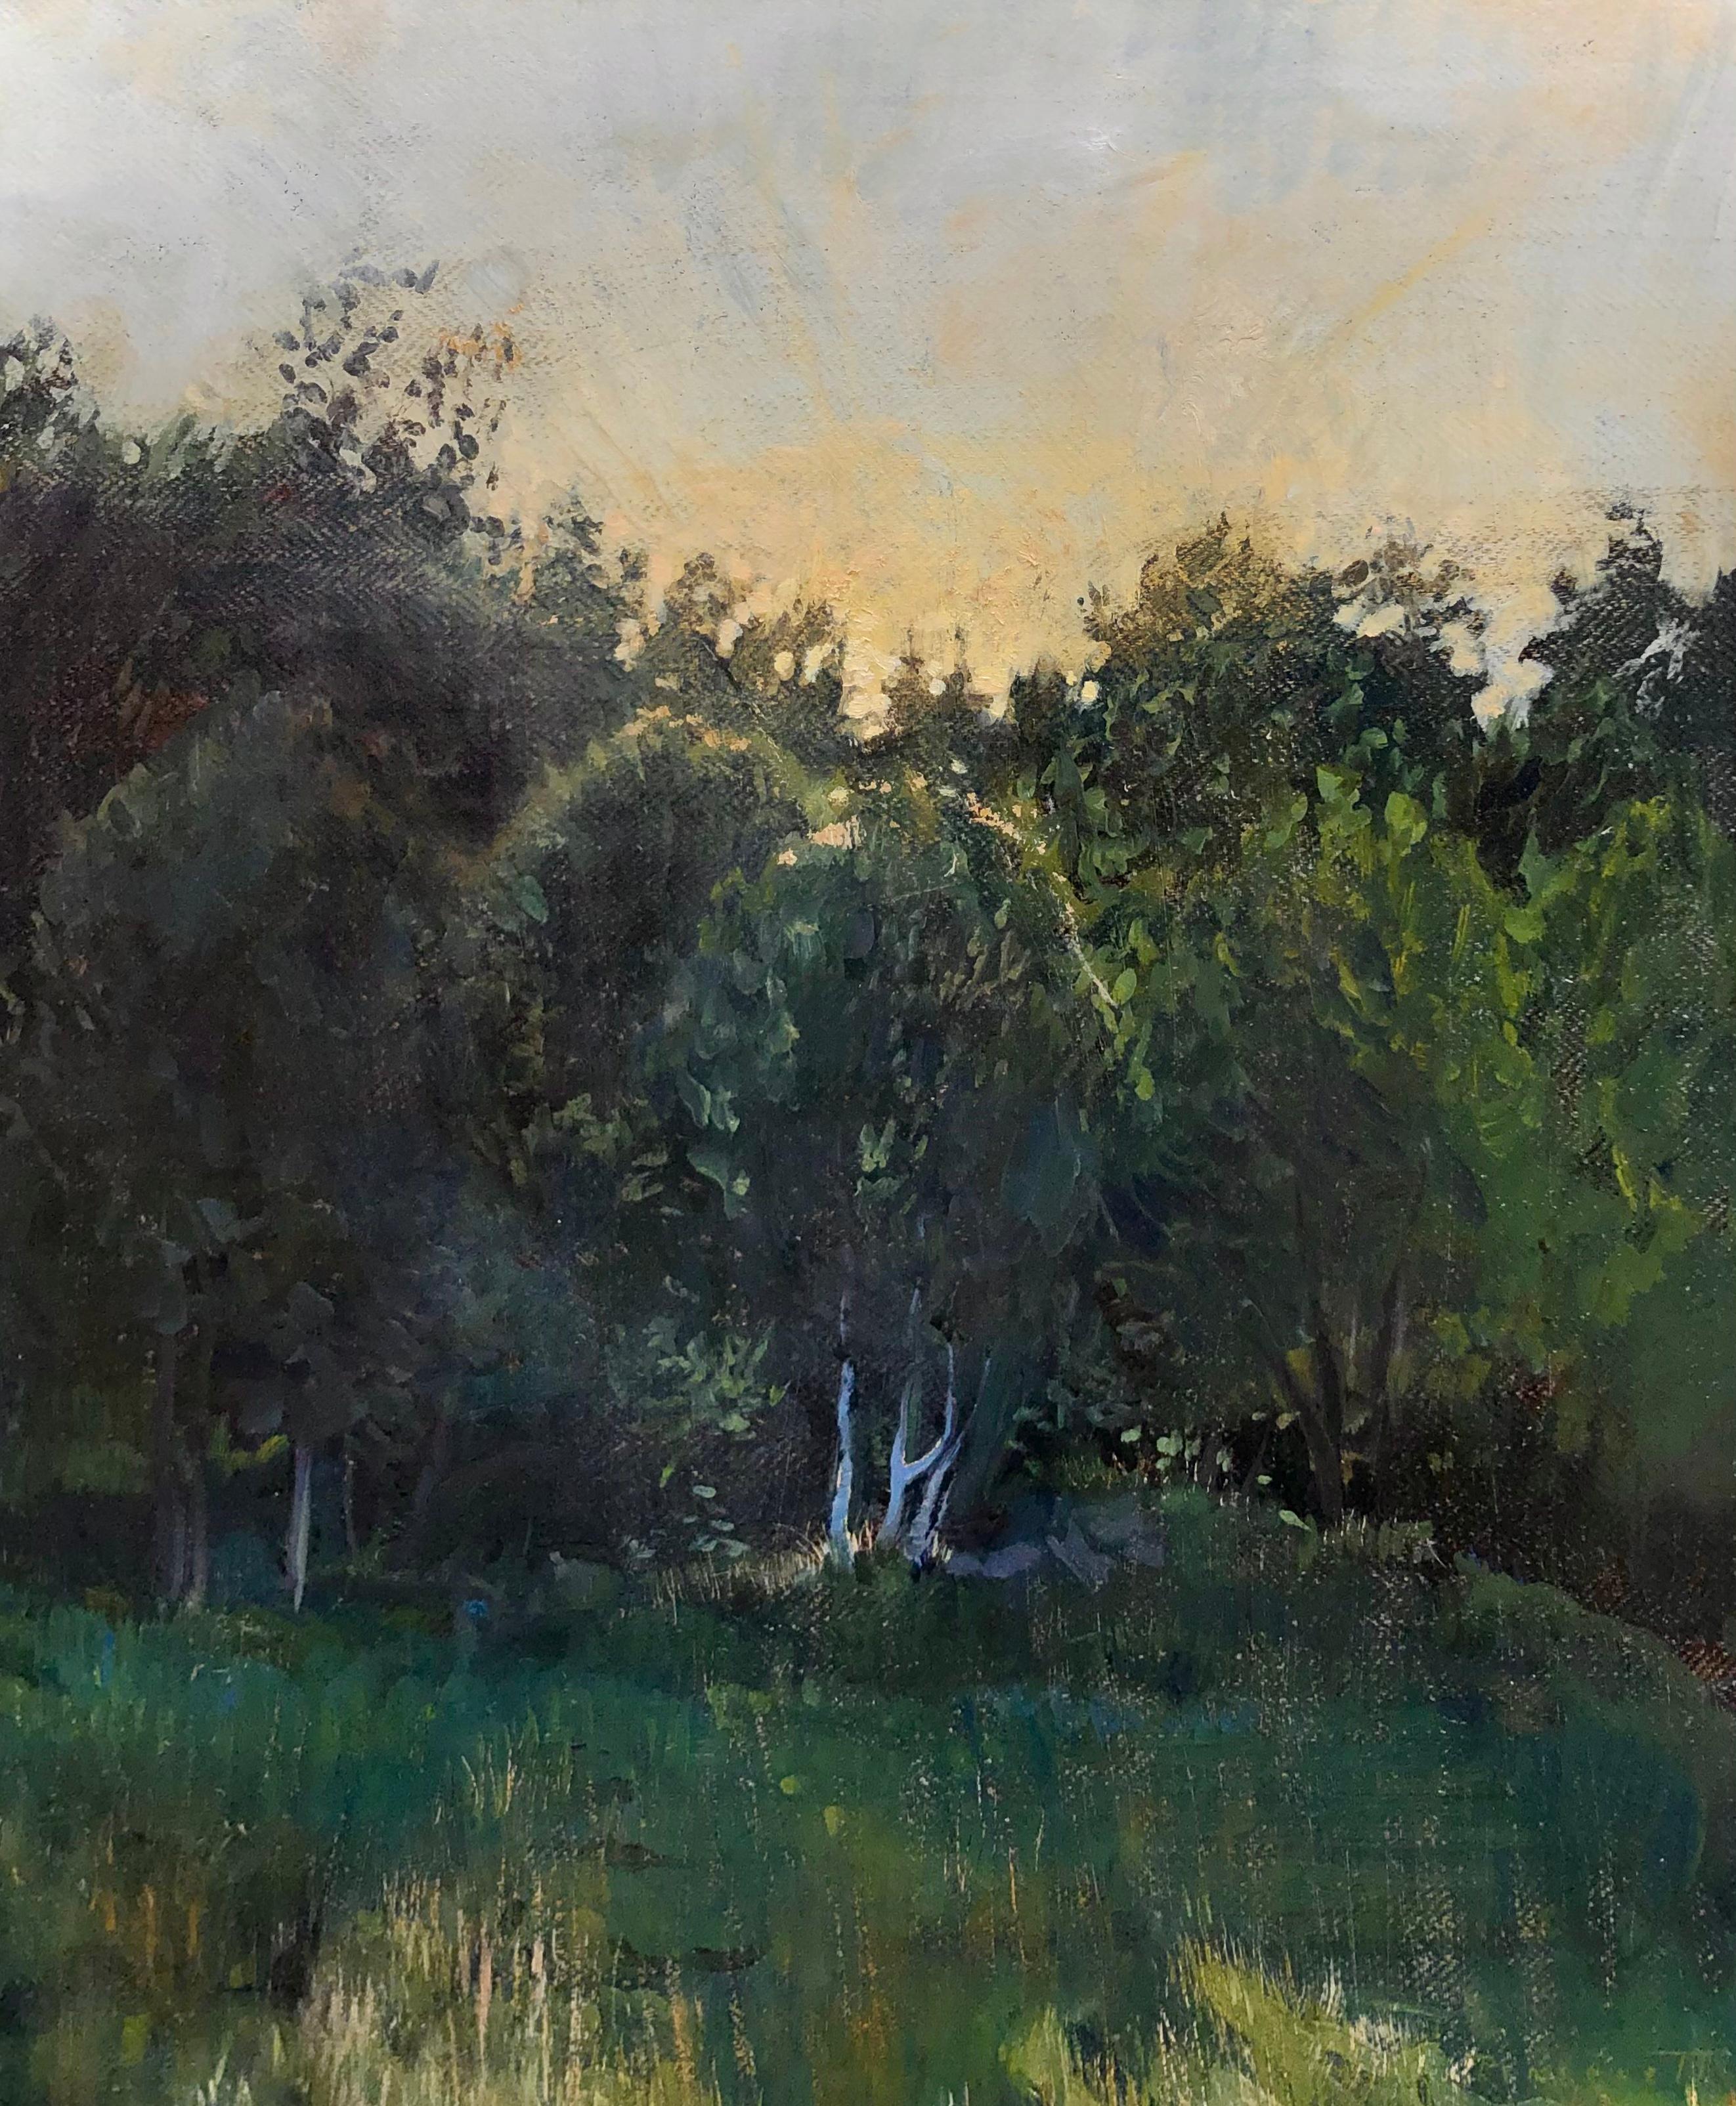 Rachel Personett Still-Life Painting – "Norwegischer Sonnenuntergang" zeitgenössisches tonalistisches Gemälde - Sonnenuntergang hinter grünen Bäumen